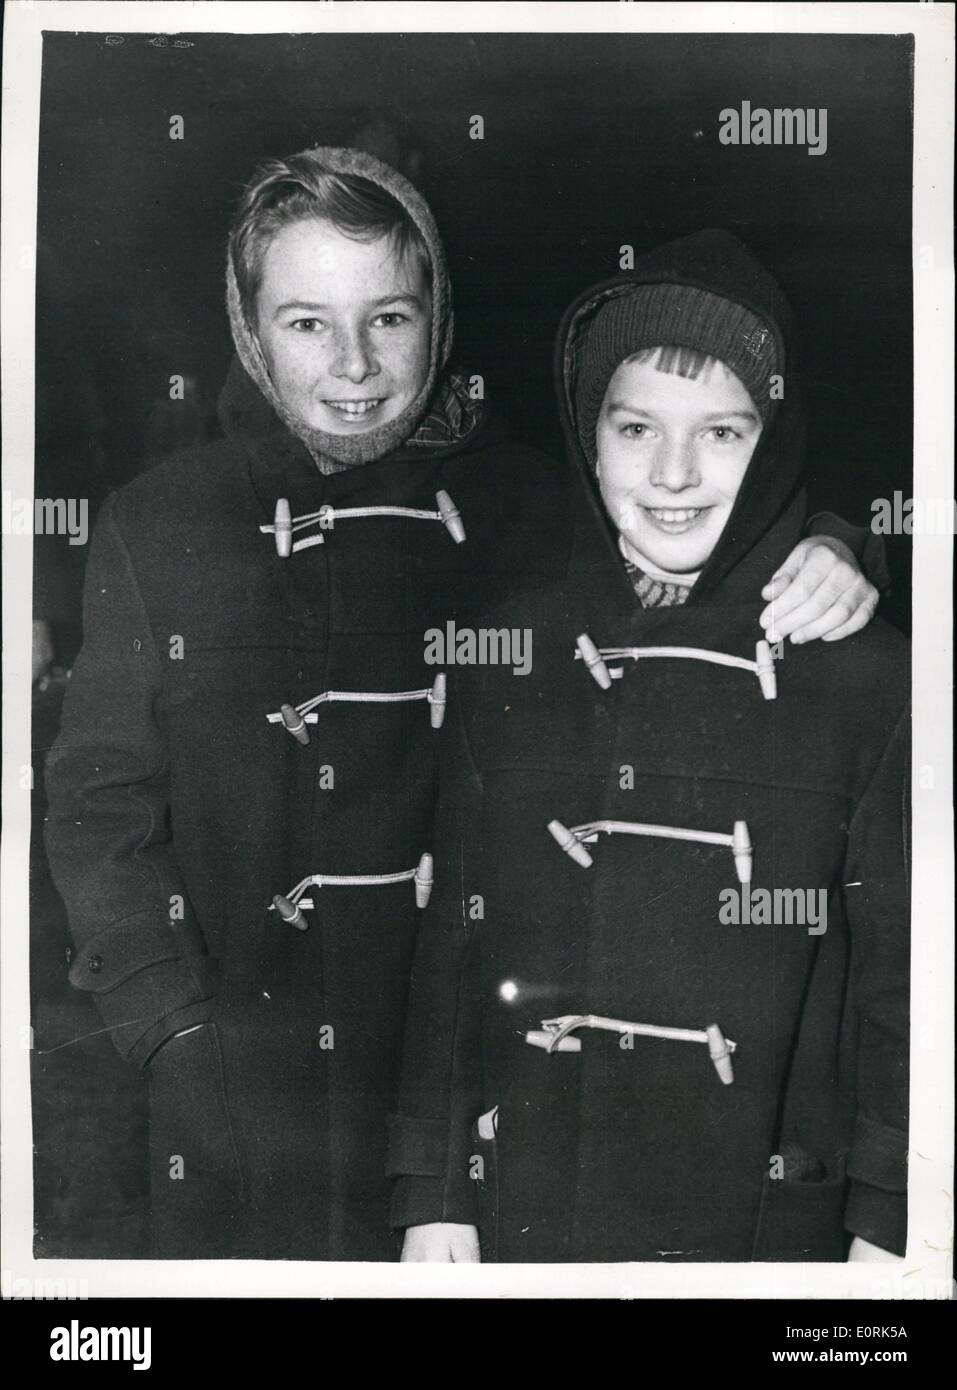 Il 12 Dic. 1959 - rifugiati arrivano a trascorrere il Natale in Inghilterra. Middlesex Boy dà la sua vacanza per i profughi a gennaio sotto gli auspici dell'aiuto internazionale per bambini - una festa di bambini rifugiati sono arrivati a Liverpool Street Station - Da Amburgo questa mattina. Essi sono per trascorrere il Natale con le famiglie qui. La foto mostra il rifugiato Jan Cetnrski (a destra) è accolto da dodici anni Colin Baker di Ashford, Middx. Al suo arrivo questa mattina. Jan speso lo scorso Natale con Colin - e quest'ultimo ha dato la sua vacanza quest'anno in modo che Jan potrebbe trascorrere questo Natale con lui. Foto Stock